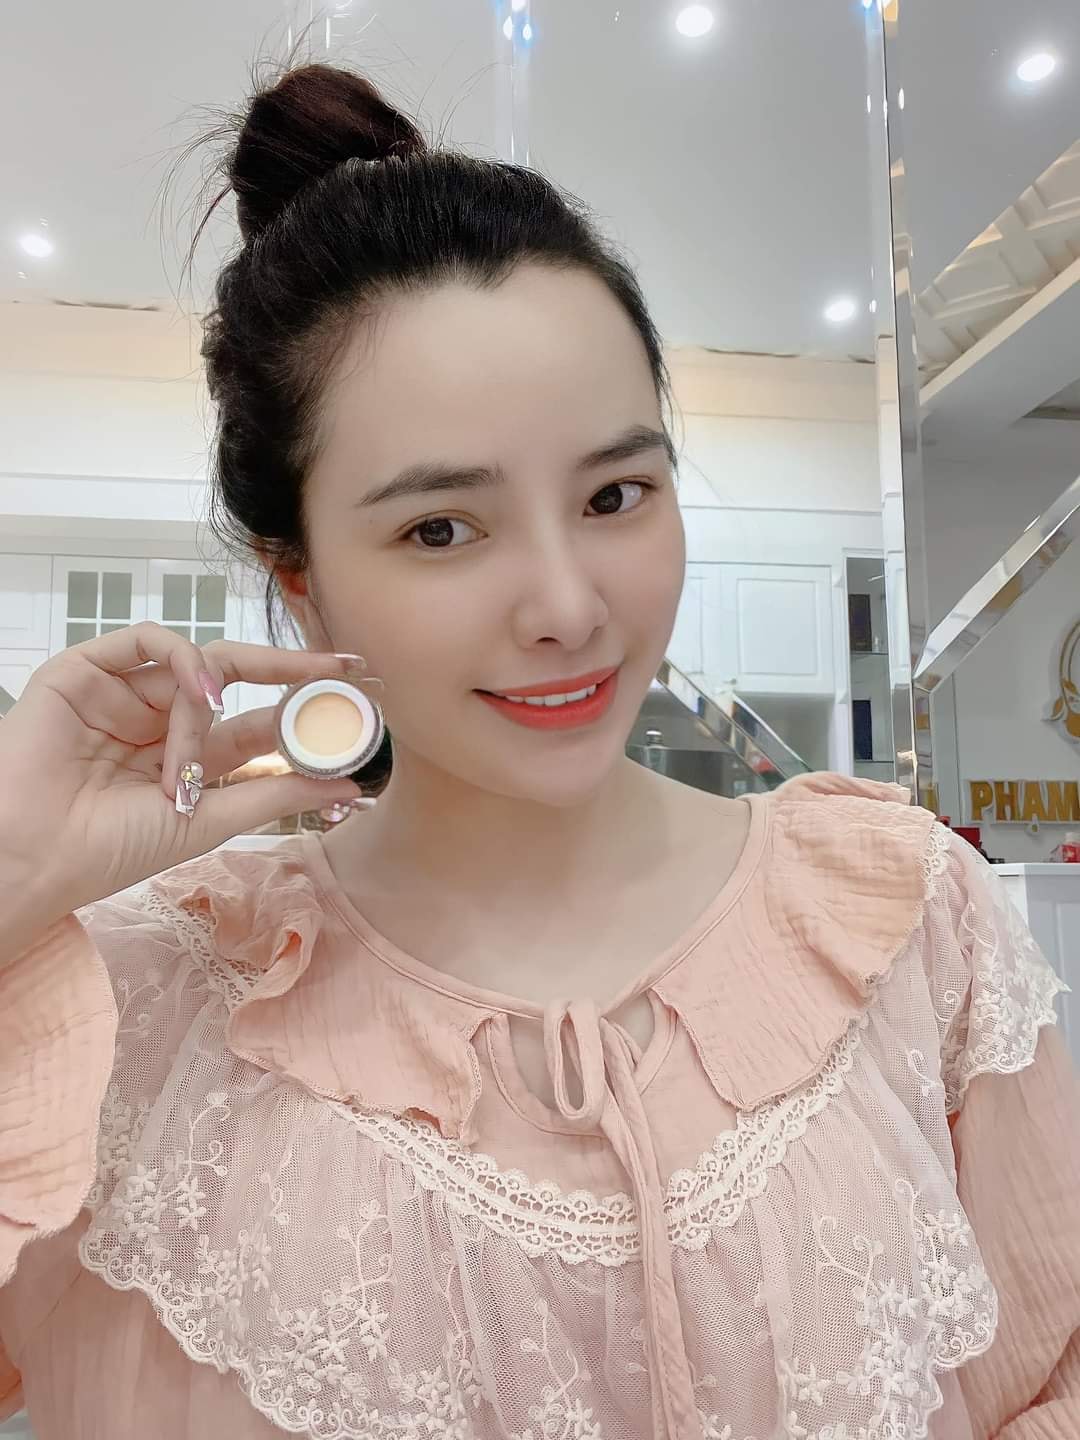 Kem Face Nhung giúp trắng da căng bóng giảm mụn Phạm Điệp Beauty chính hãng - FACENHUNG01